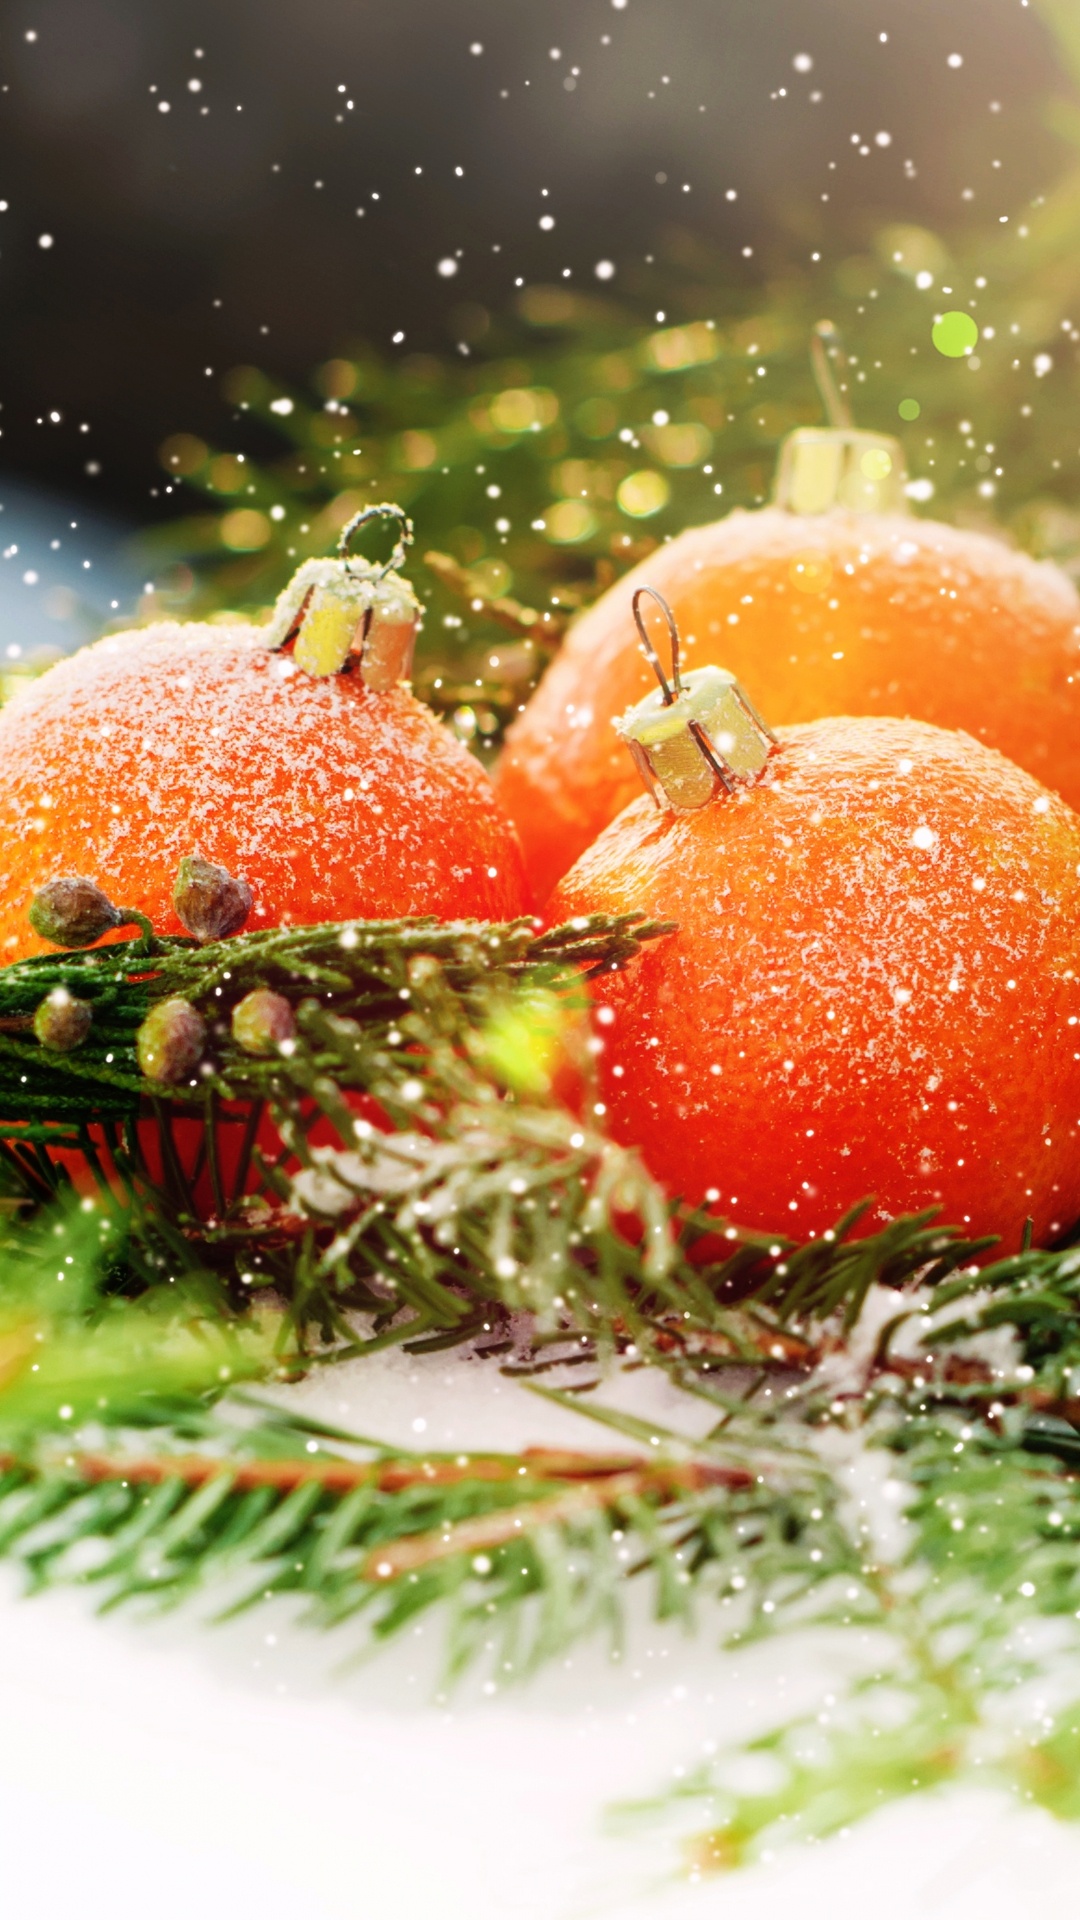 El Día De Navidad, Nochevieja, la Comida Vegetariana, Alimento, Vegetal. Wallpaper in 1080x1920 Resolution